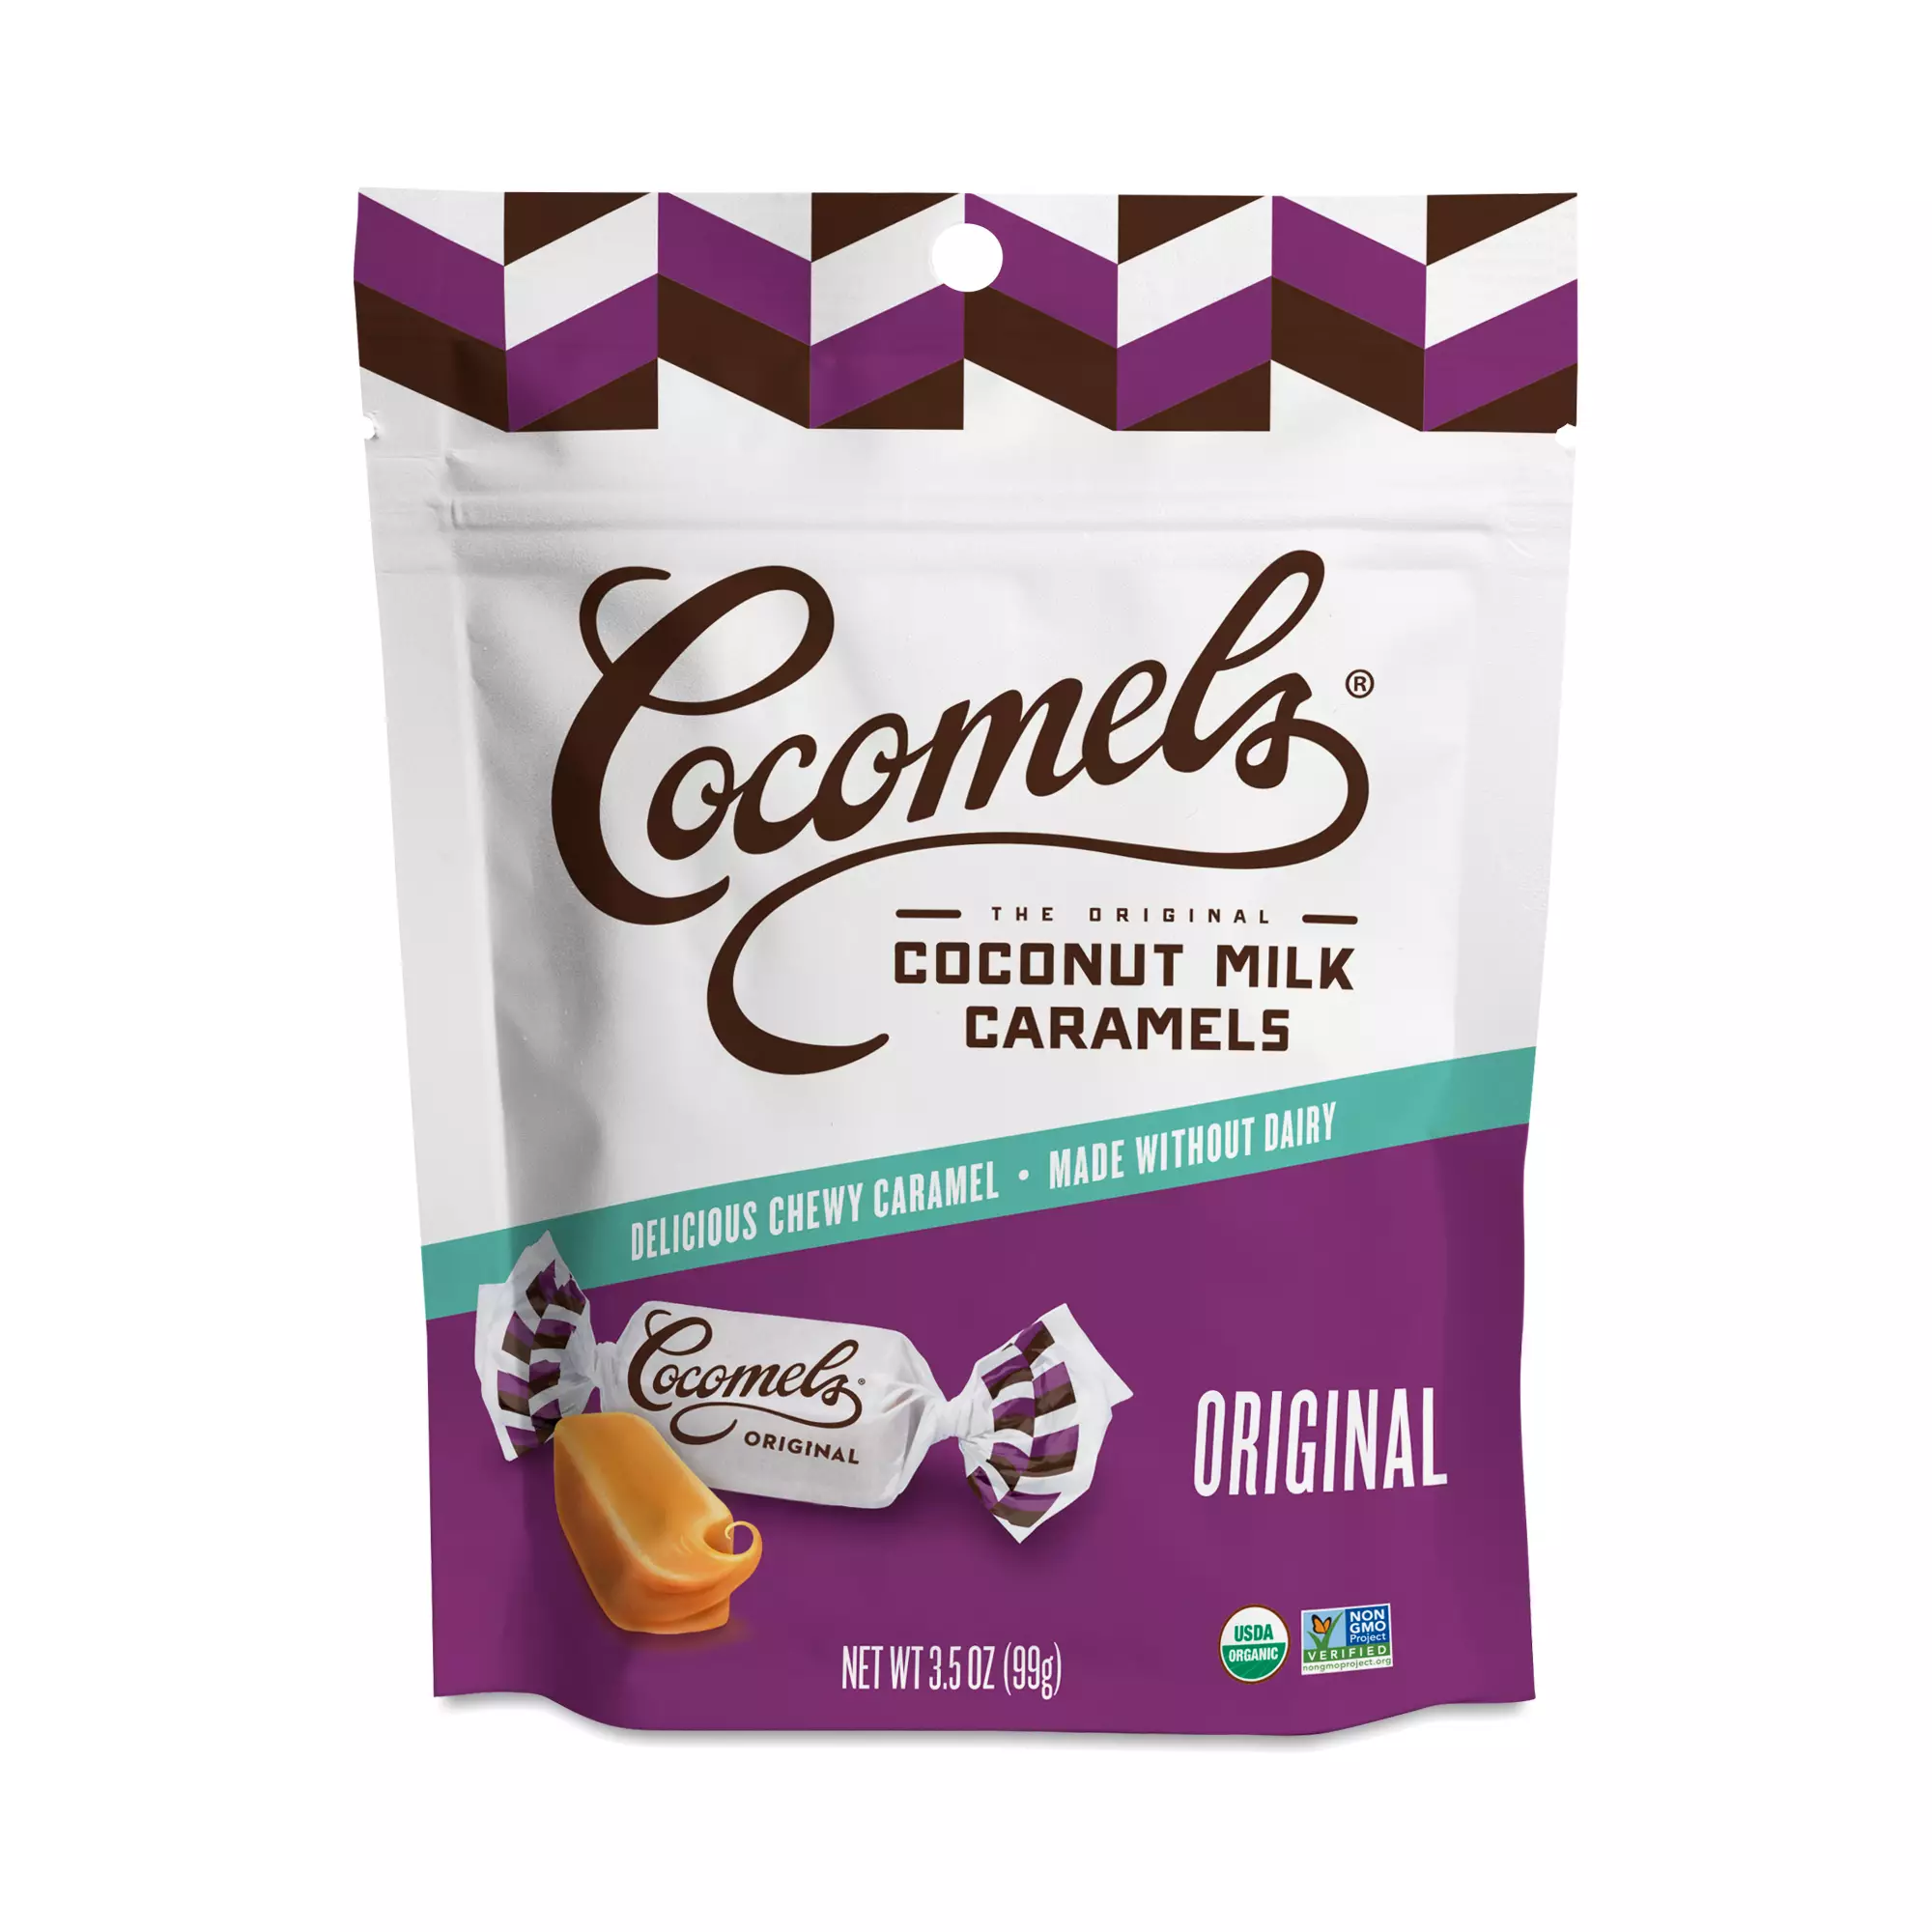 Cocomels coconut milk caramels